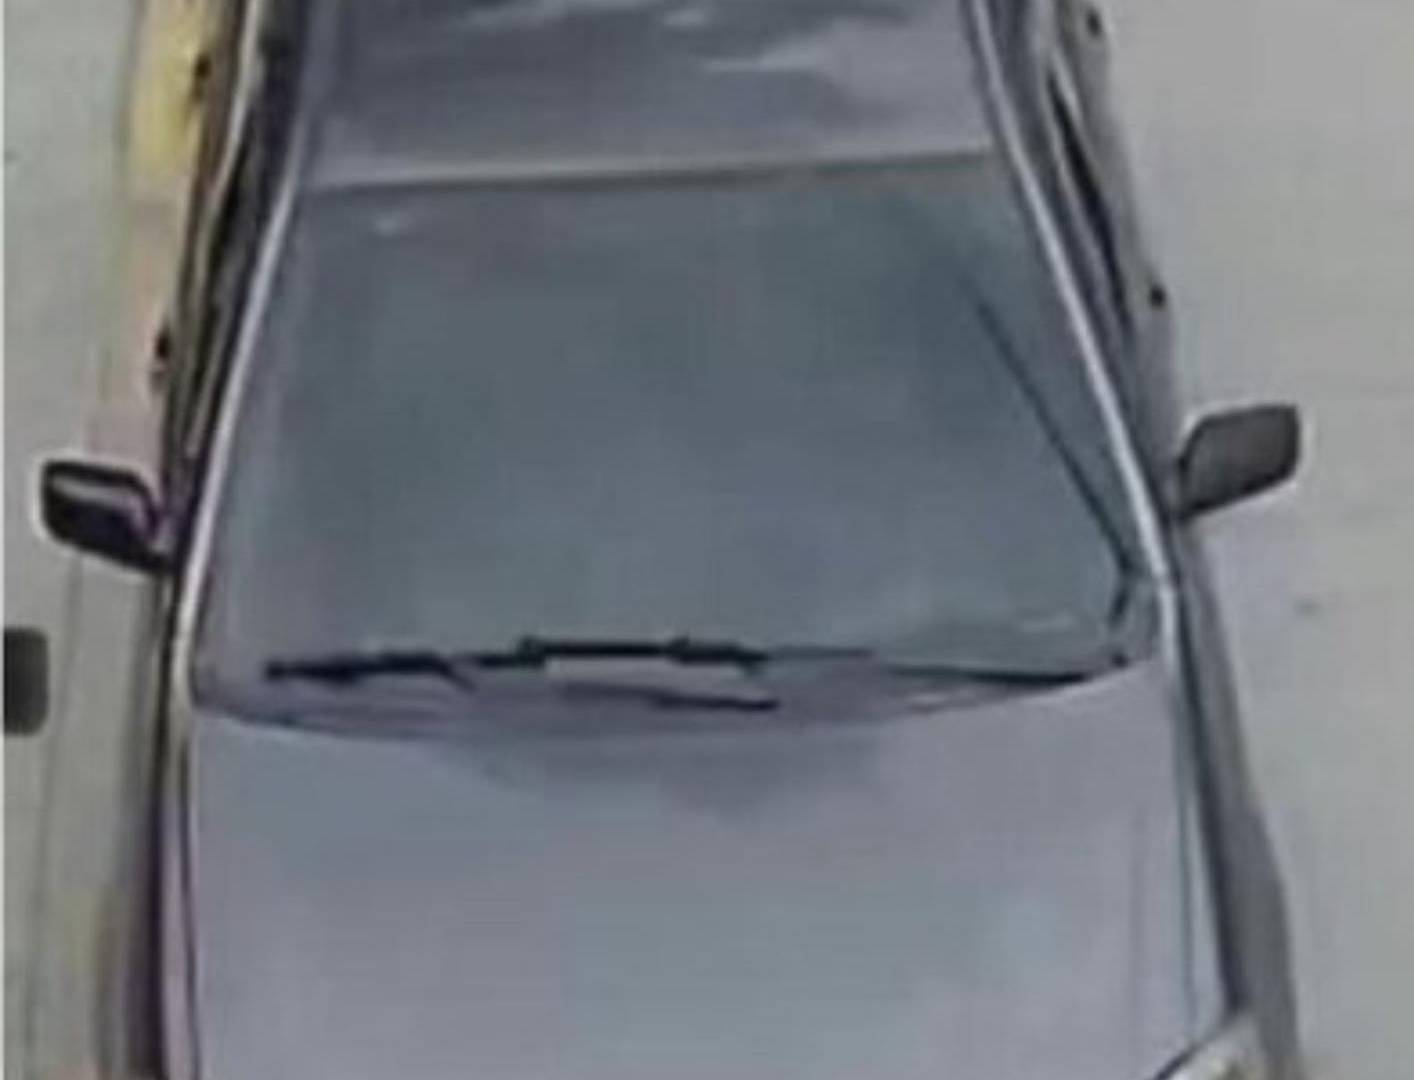 $!Este carro fue robado de un estacionamiento en la avenida La Paz de Tegucigalpa y al mes apareció registrado a nombre de otro dueño y con nuevas placas.